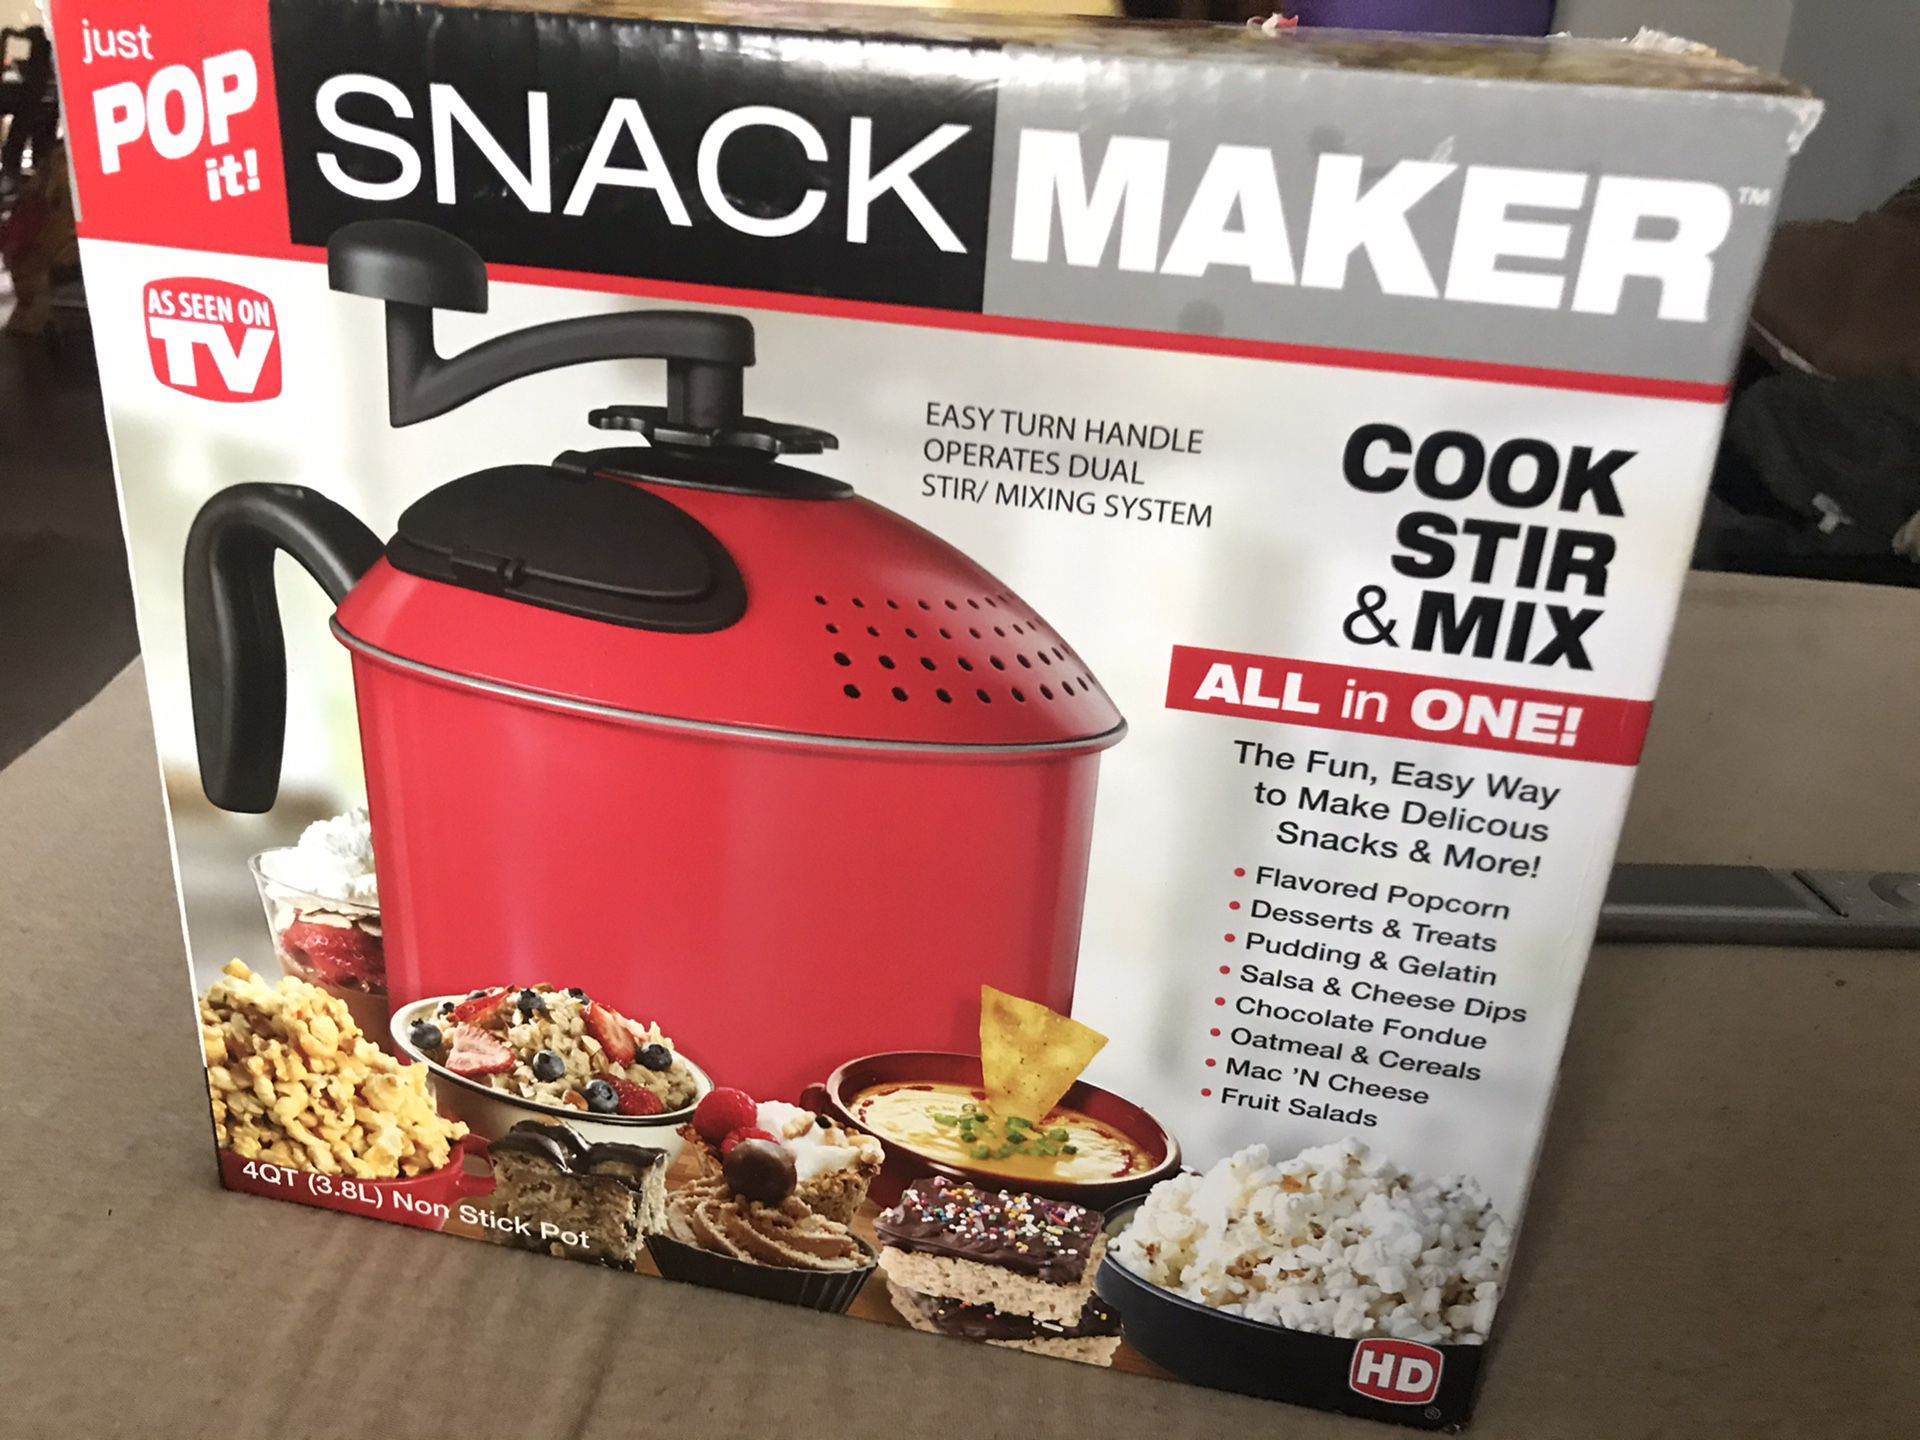 Just Pop It! Snack Maker Pot, Strainer, Mixer in-one